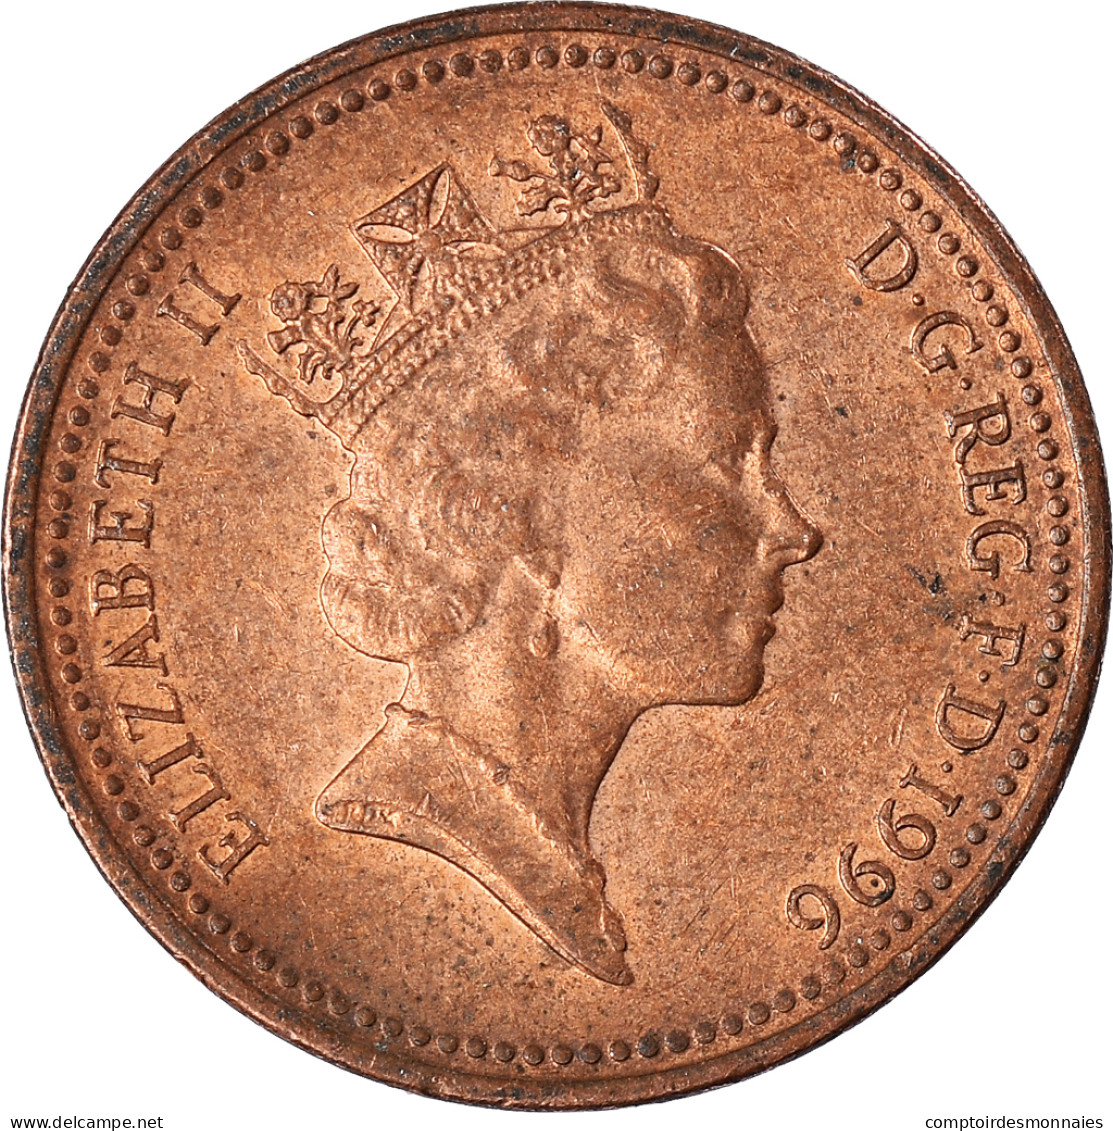 Monnaie, Grande-Bretagne, Penny, 1996 - 1 Penny & 1 New Penny